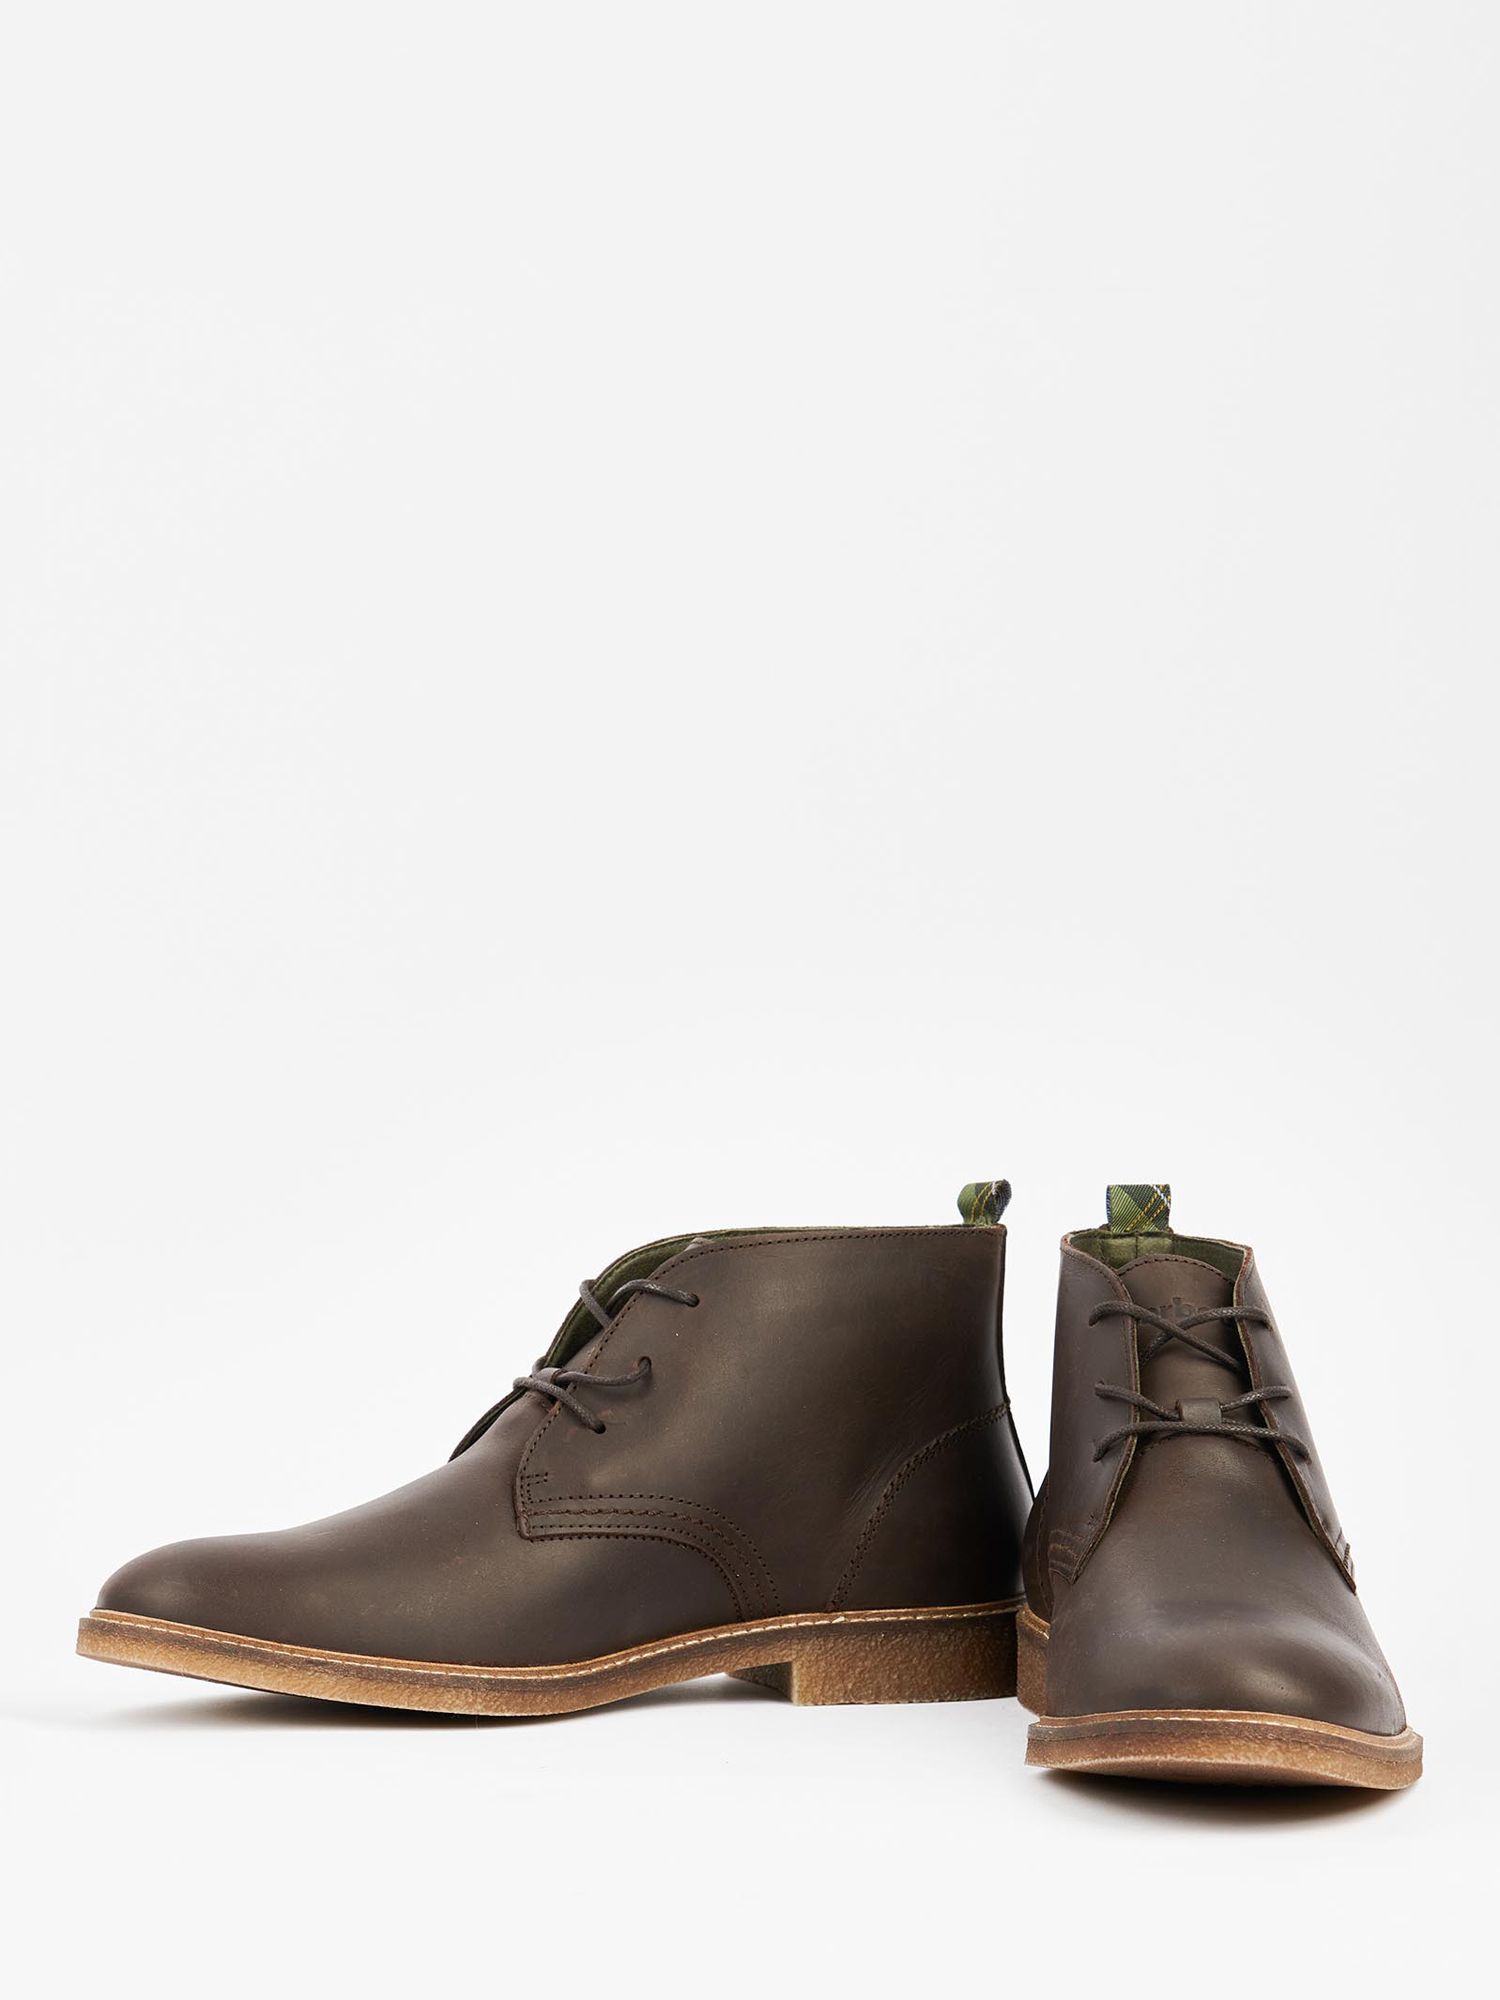 Barbour Sanoran Desert Boots, Brown, 7